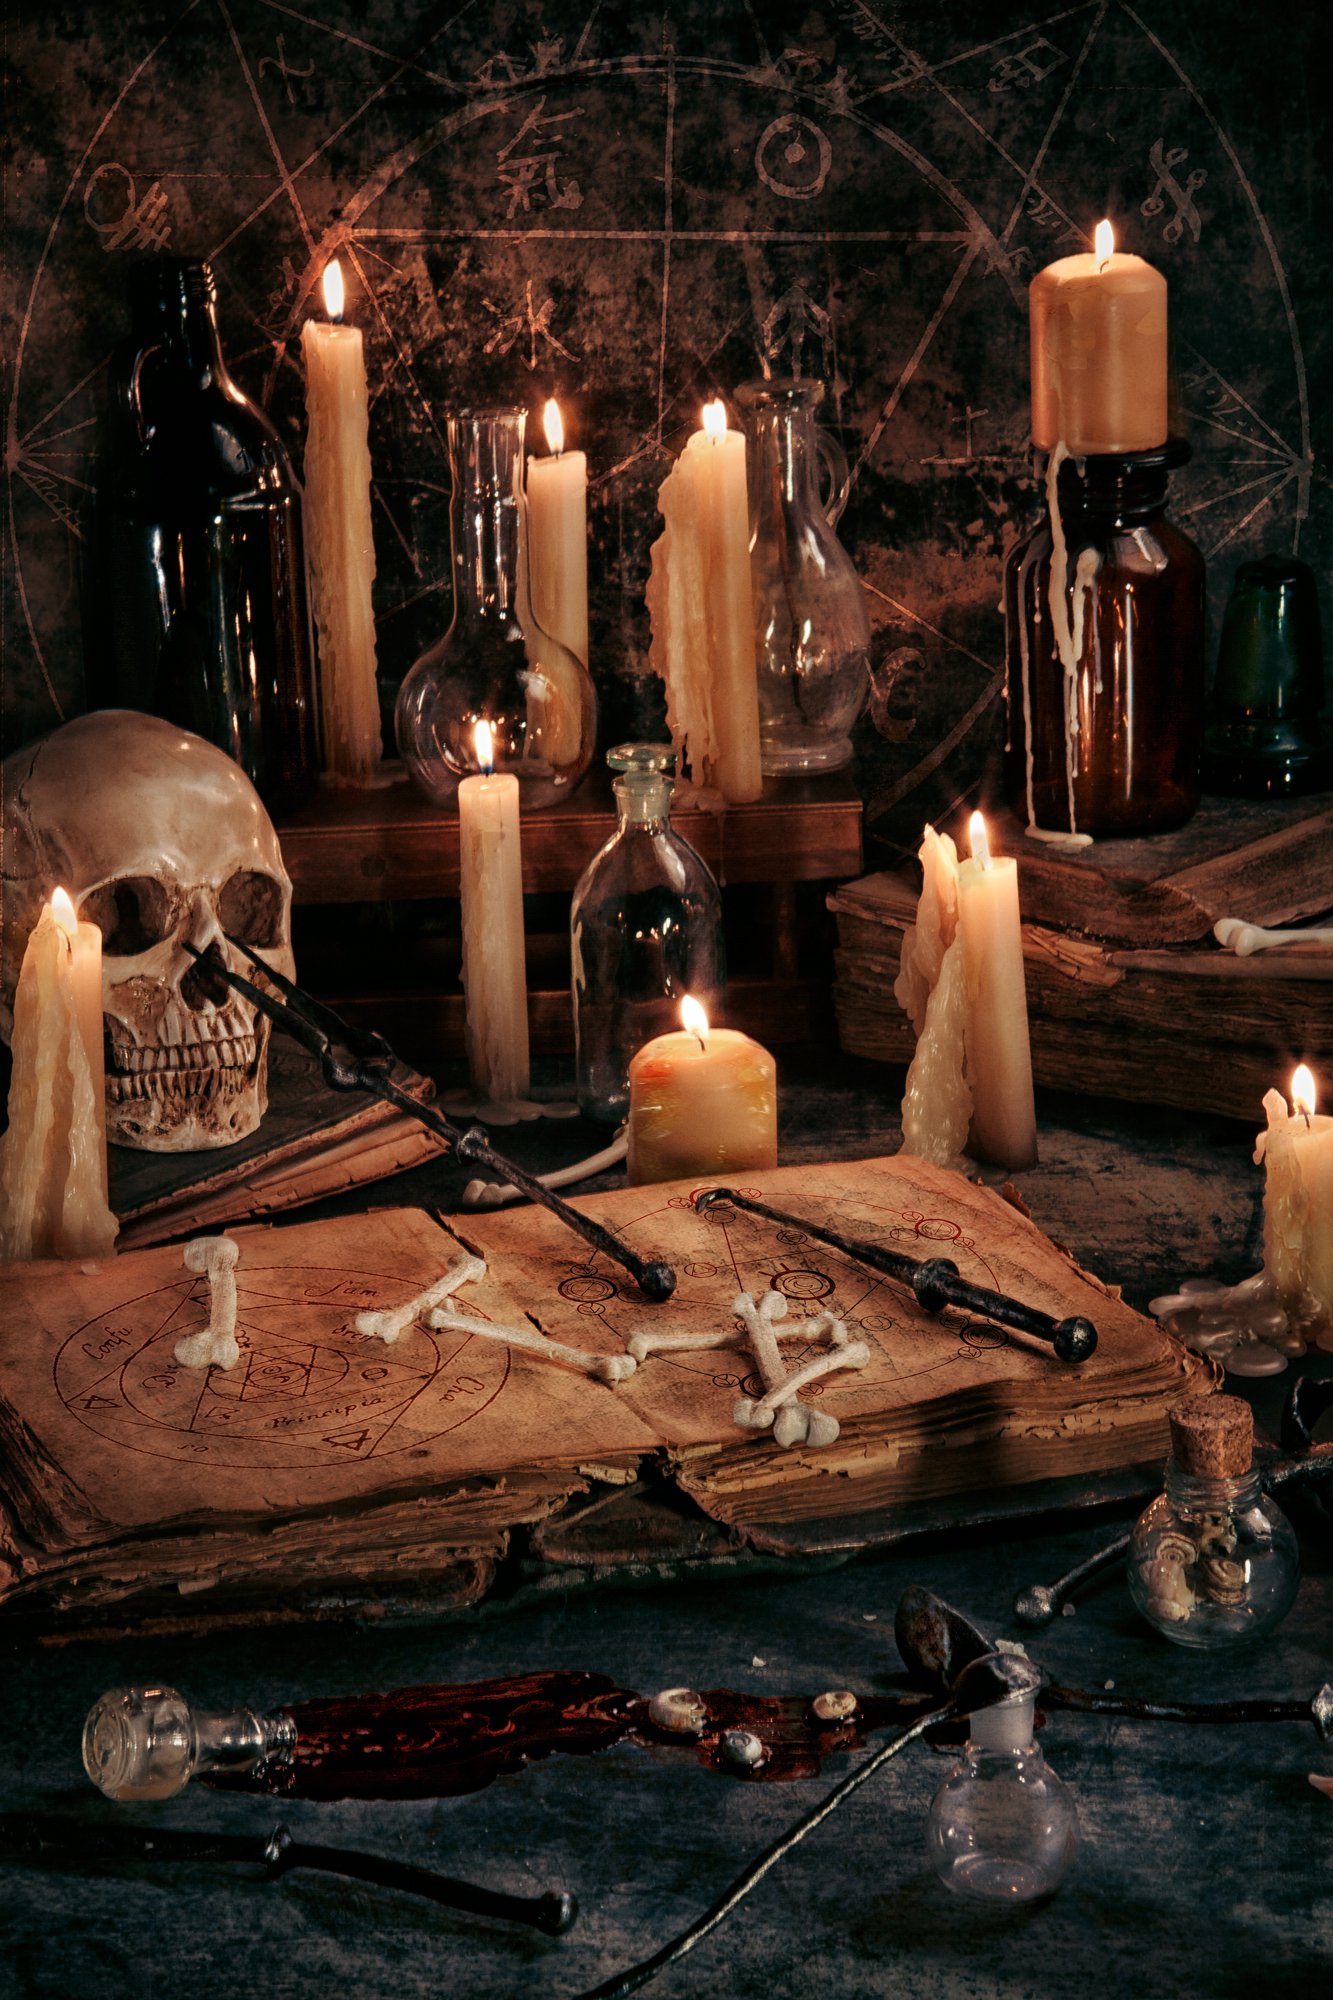 череп, кости, склянки, стекло, свечи, средневековые инструменты, книги, натюрморт, пентаграммы, Наталья Голубева